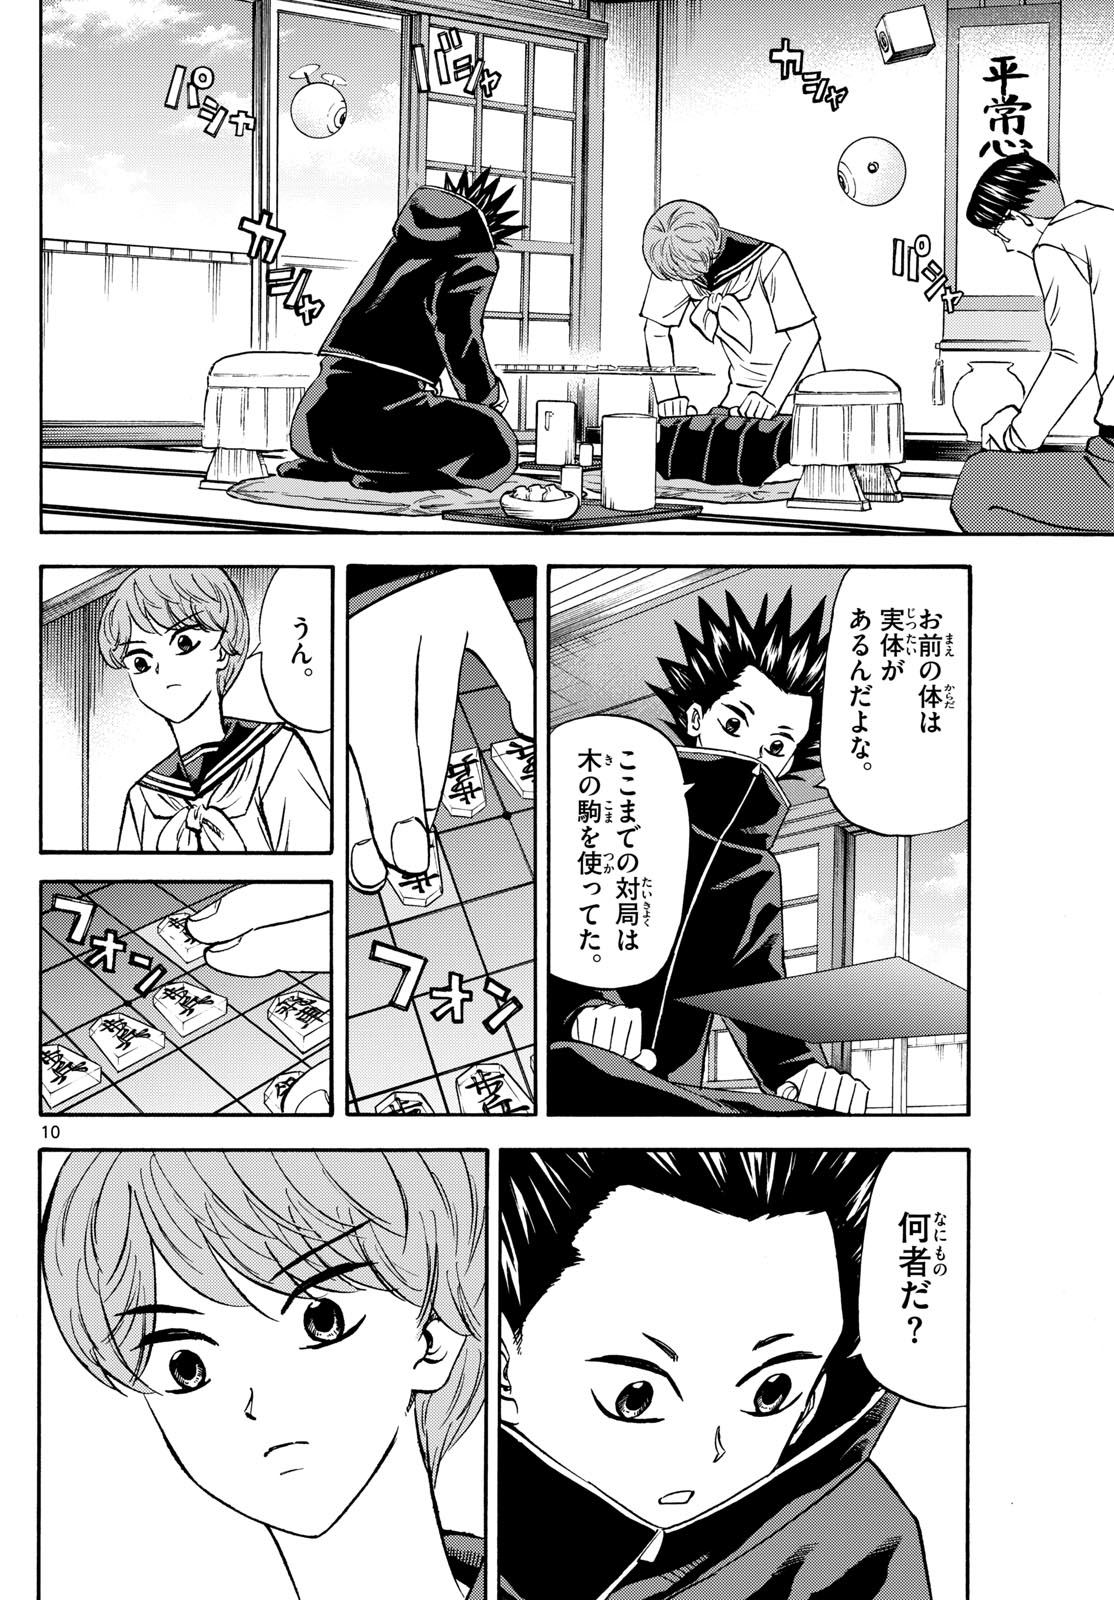 Tatsu to Ichigo - Chapter 191 - Page 10